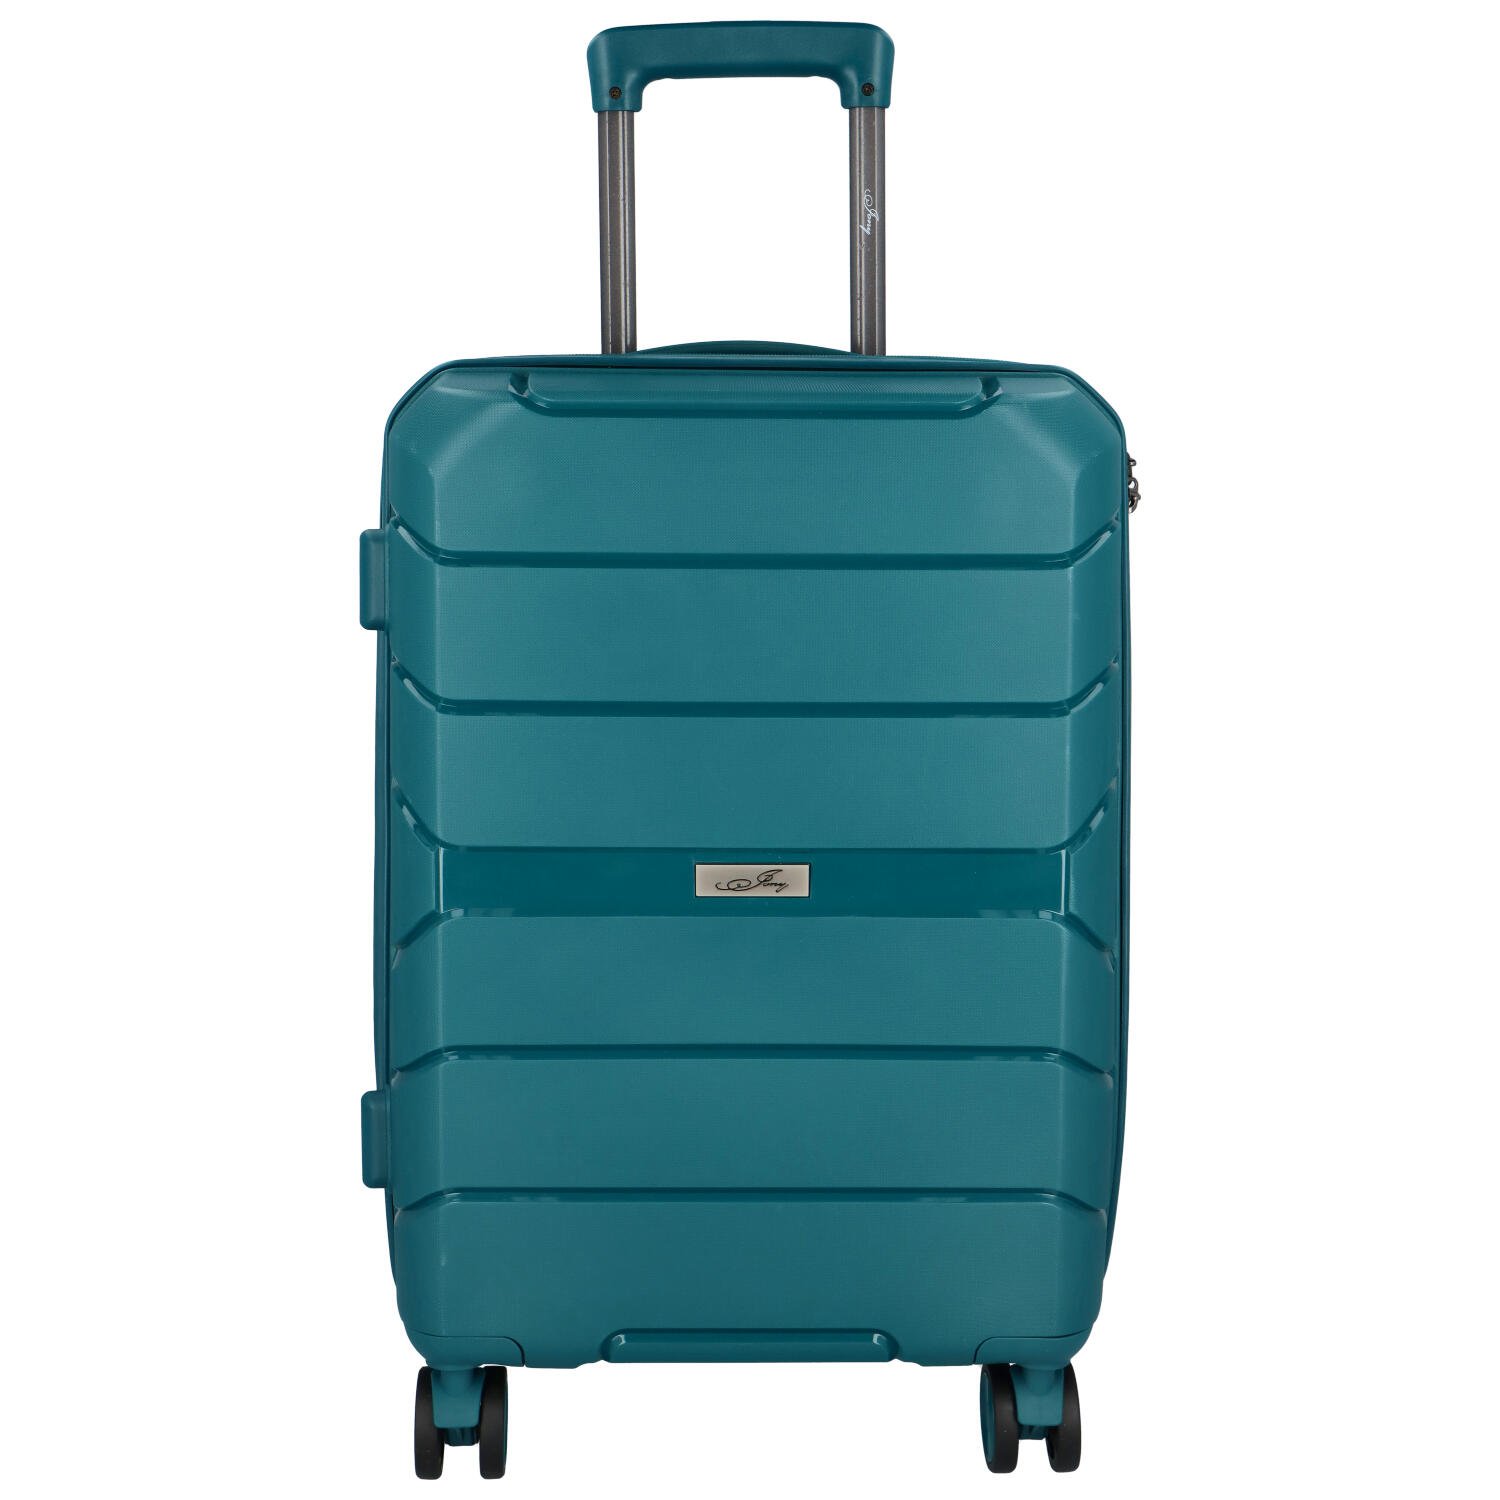 Cestovní plastový kufr Franco velikosti S, modrozelený